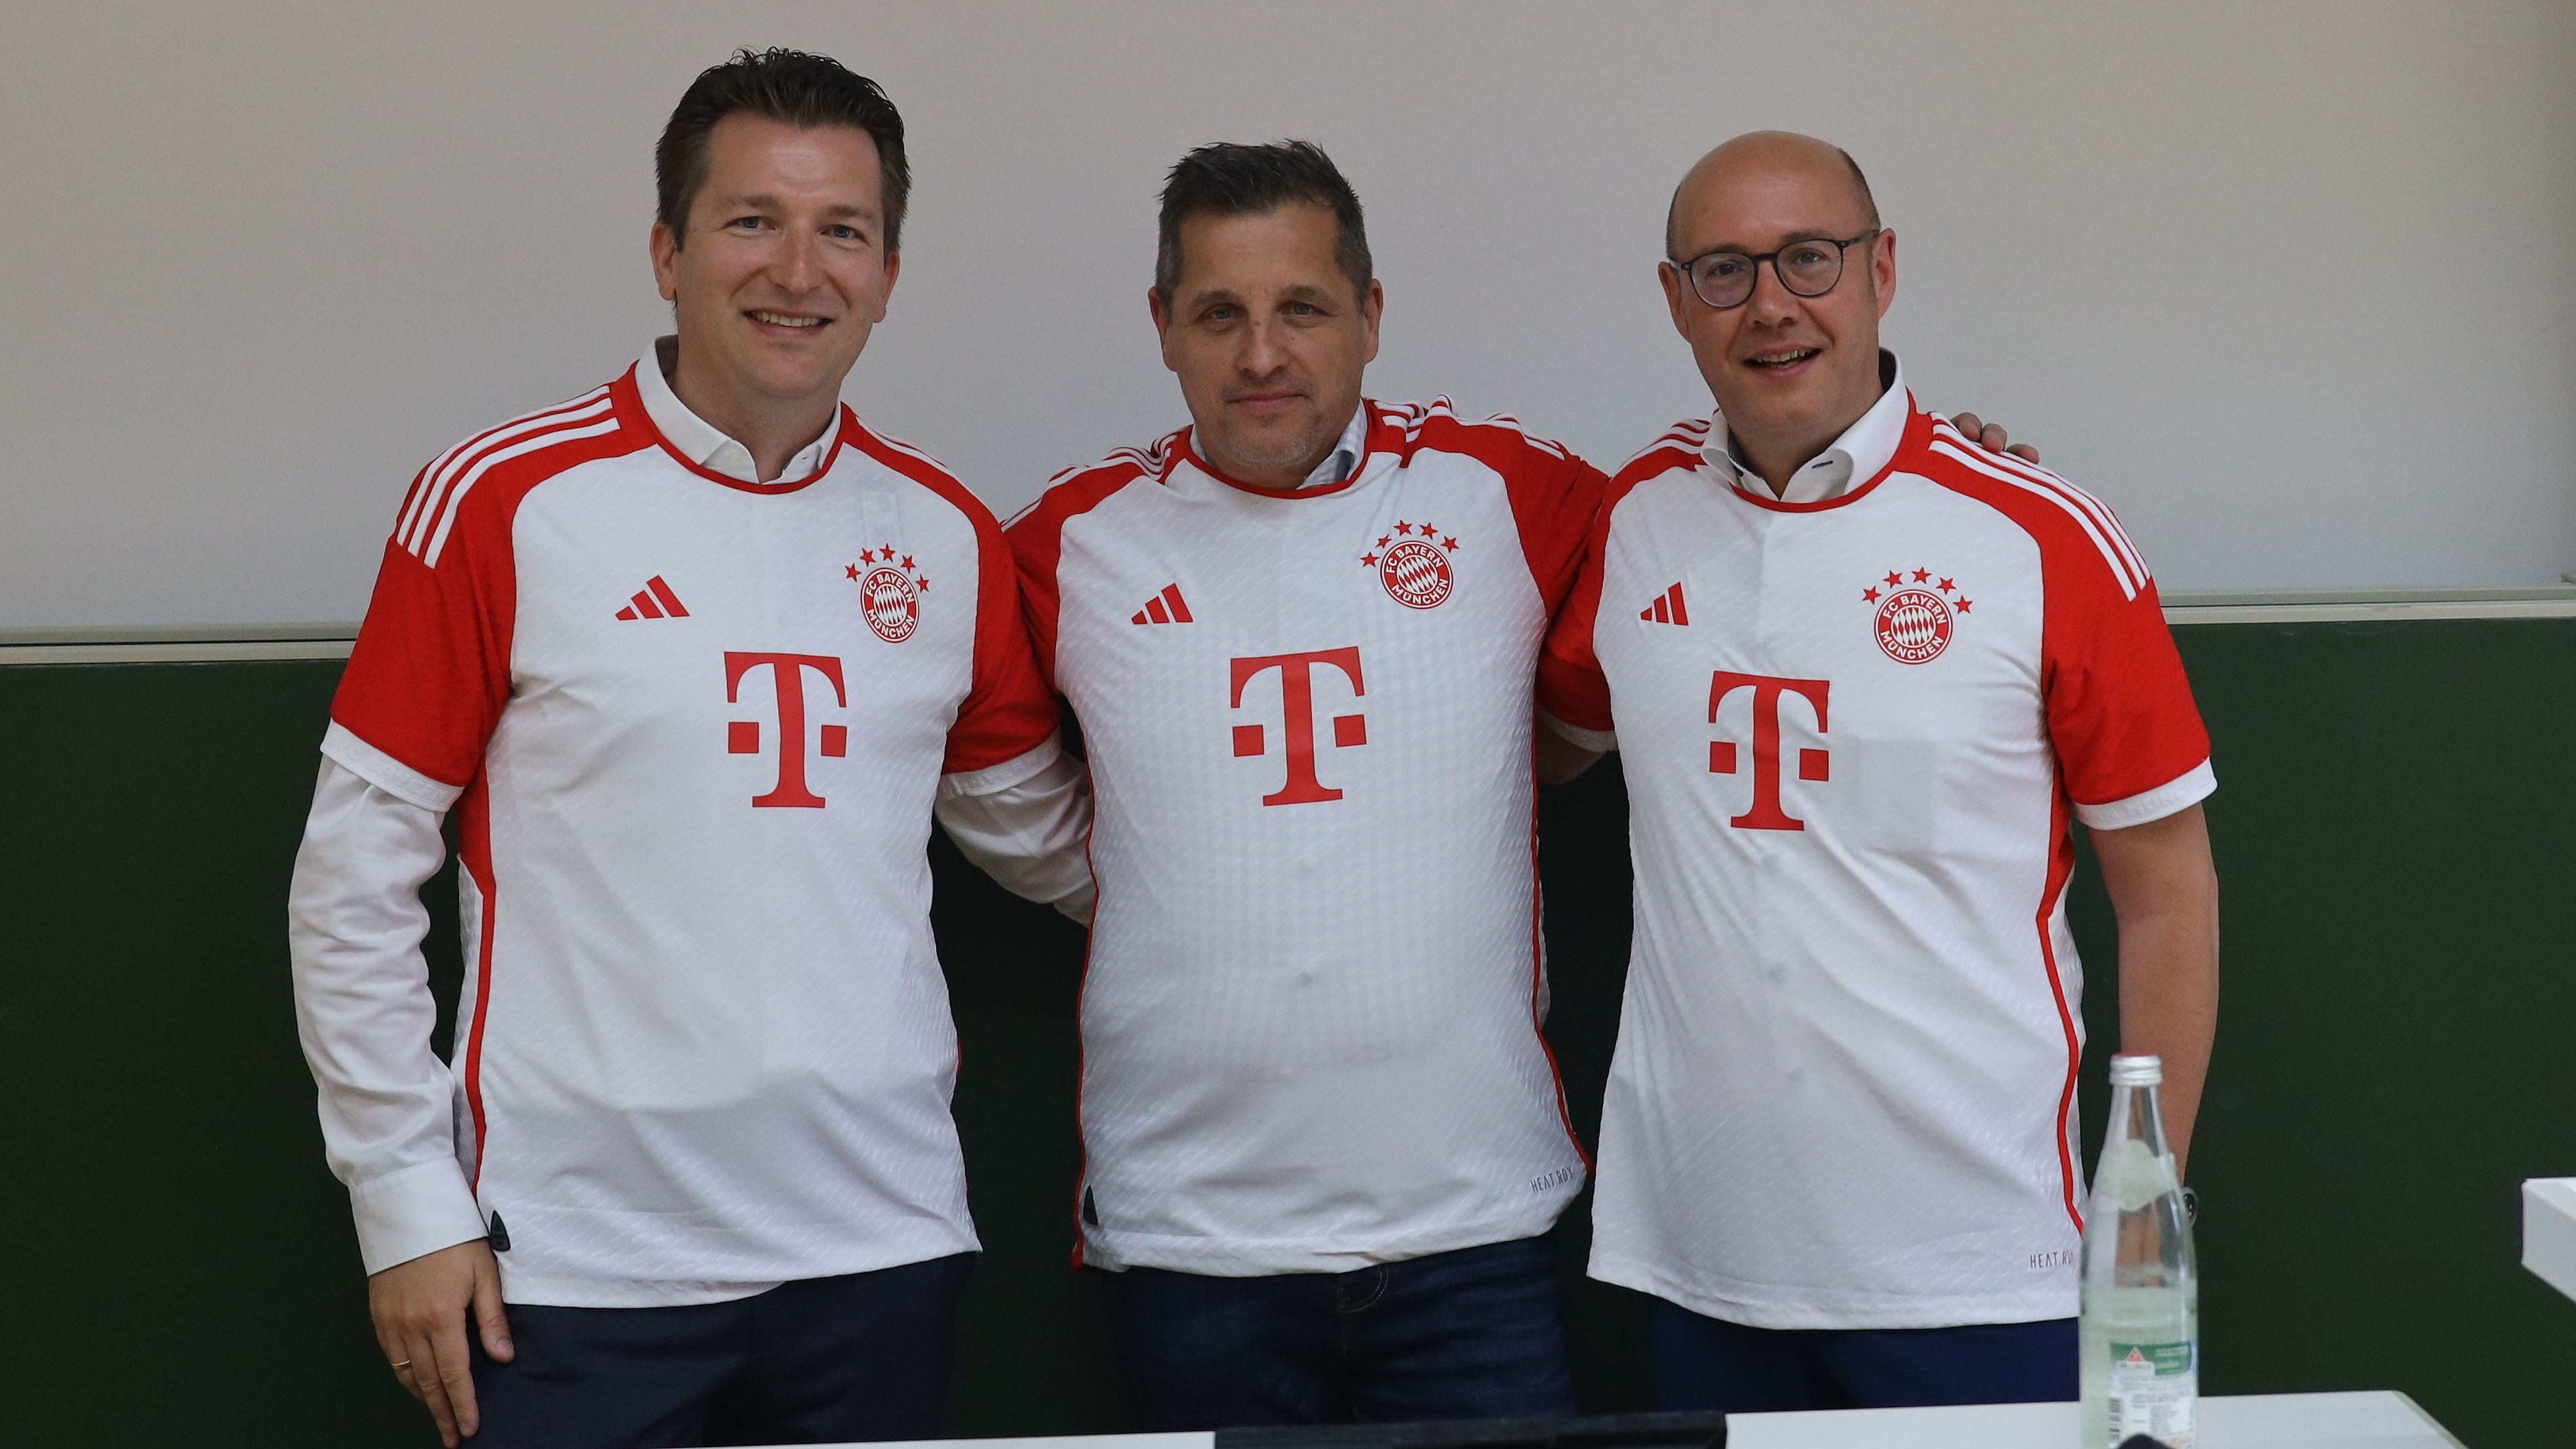 FC Bayern München zu Gast an Hochschule Landshut